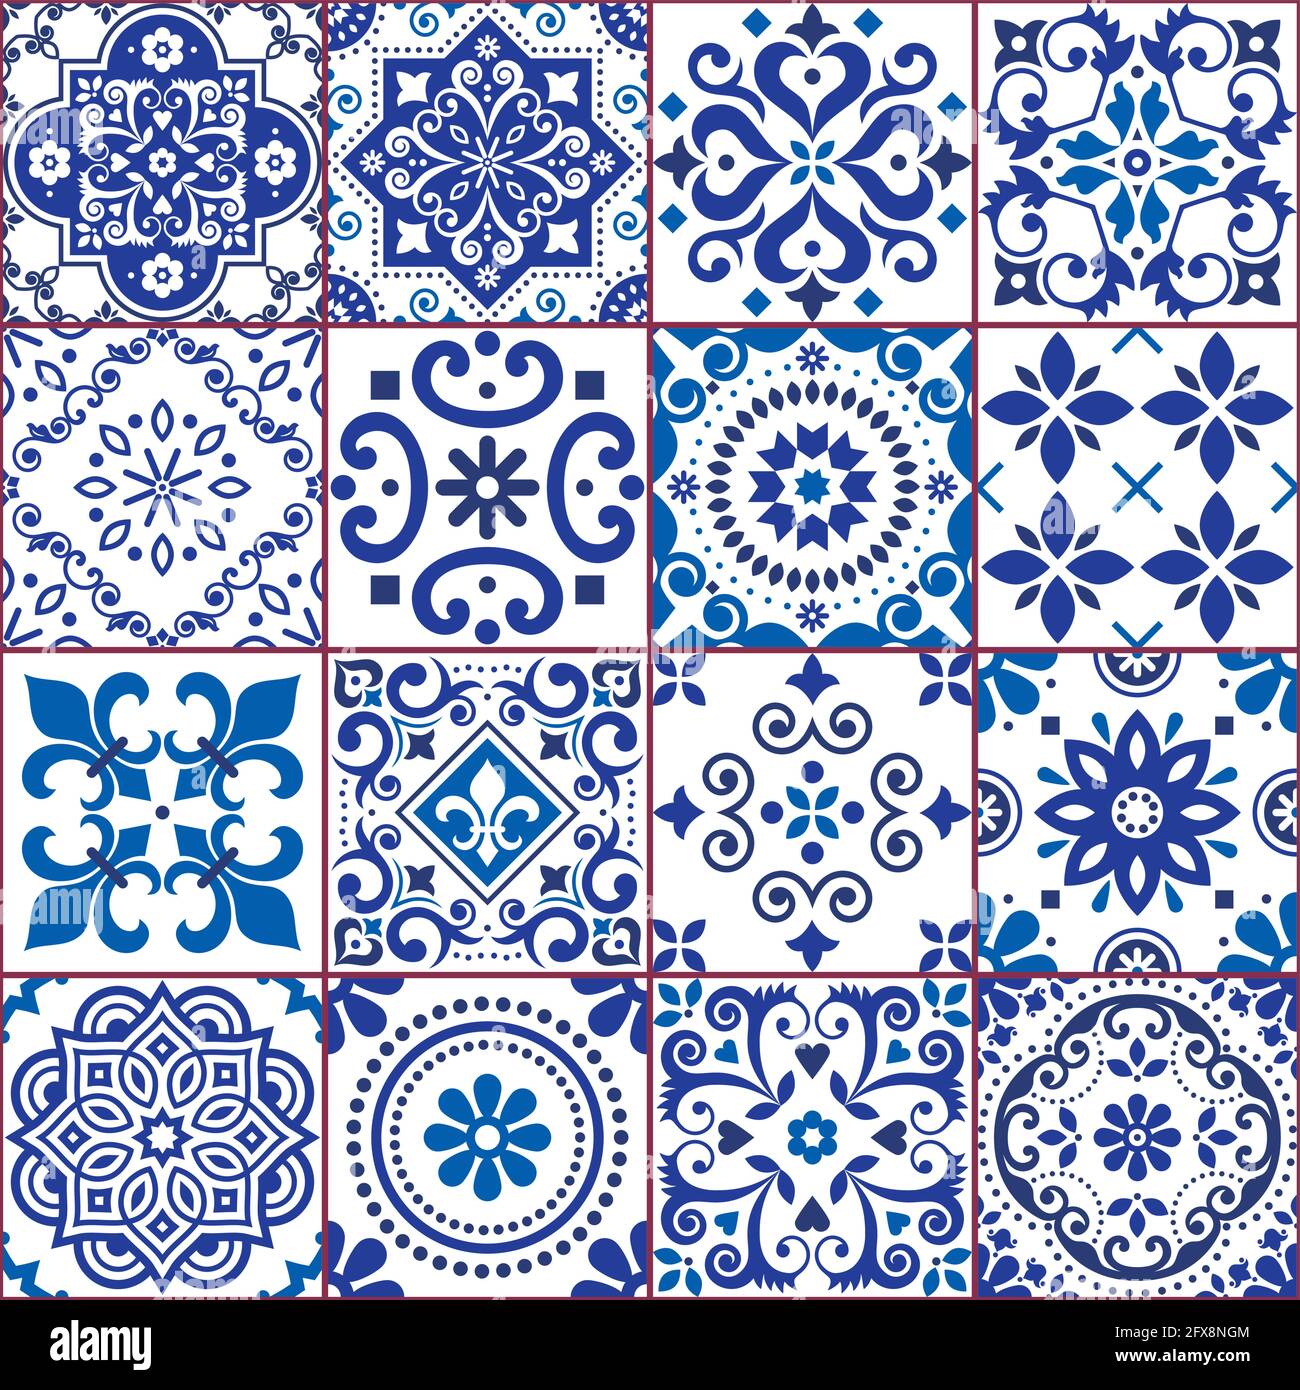 Piastrelle azulejo portoghese e spagnolo collezione di motivi vettoriali senza cuciture in blu navy e bianco, tradizionale design floreale grande set ispirato all'arte delle piastrelle Illustrazione Vettoriale